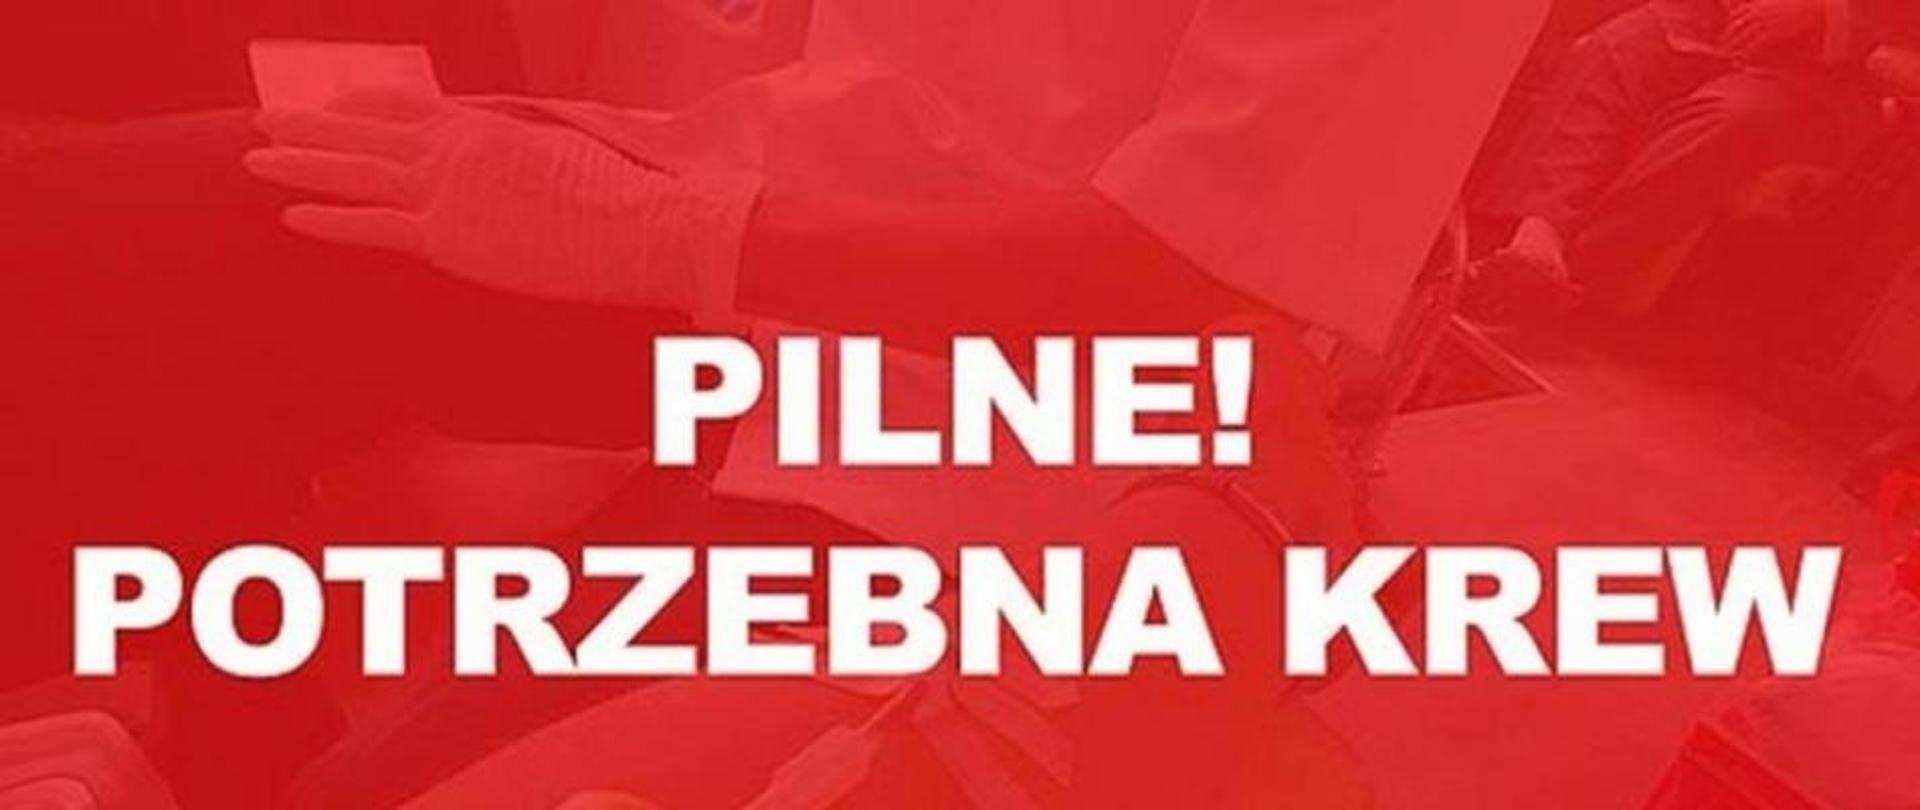 Zbiórka krwi dla funkcjonariusza KW PSP w Warszawie - plakat pilnie potrzebna krew